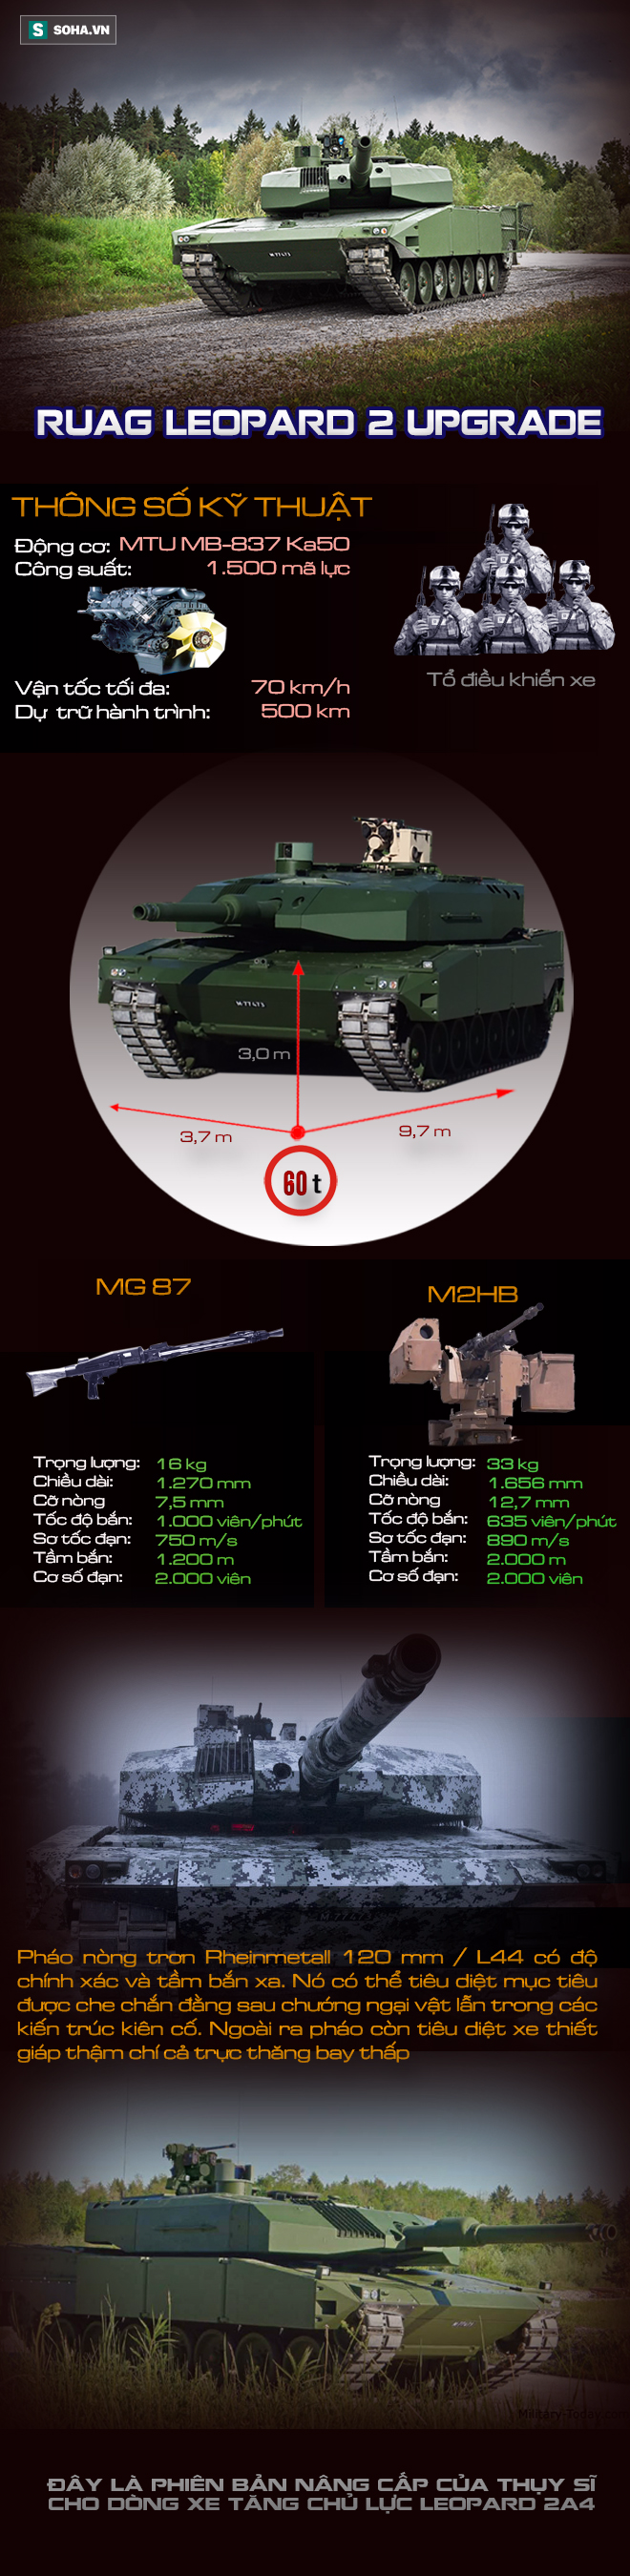 Gói nâng cấp mang lại sức sống mới cho xe tăng Leopard 2A4 huyền thoại - Ảnh 1.